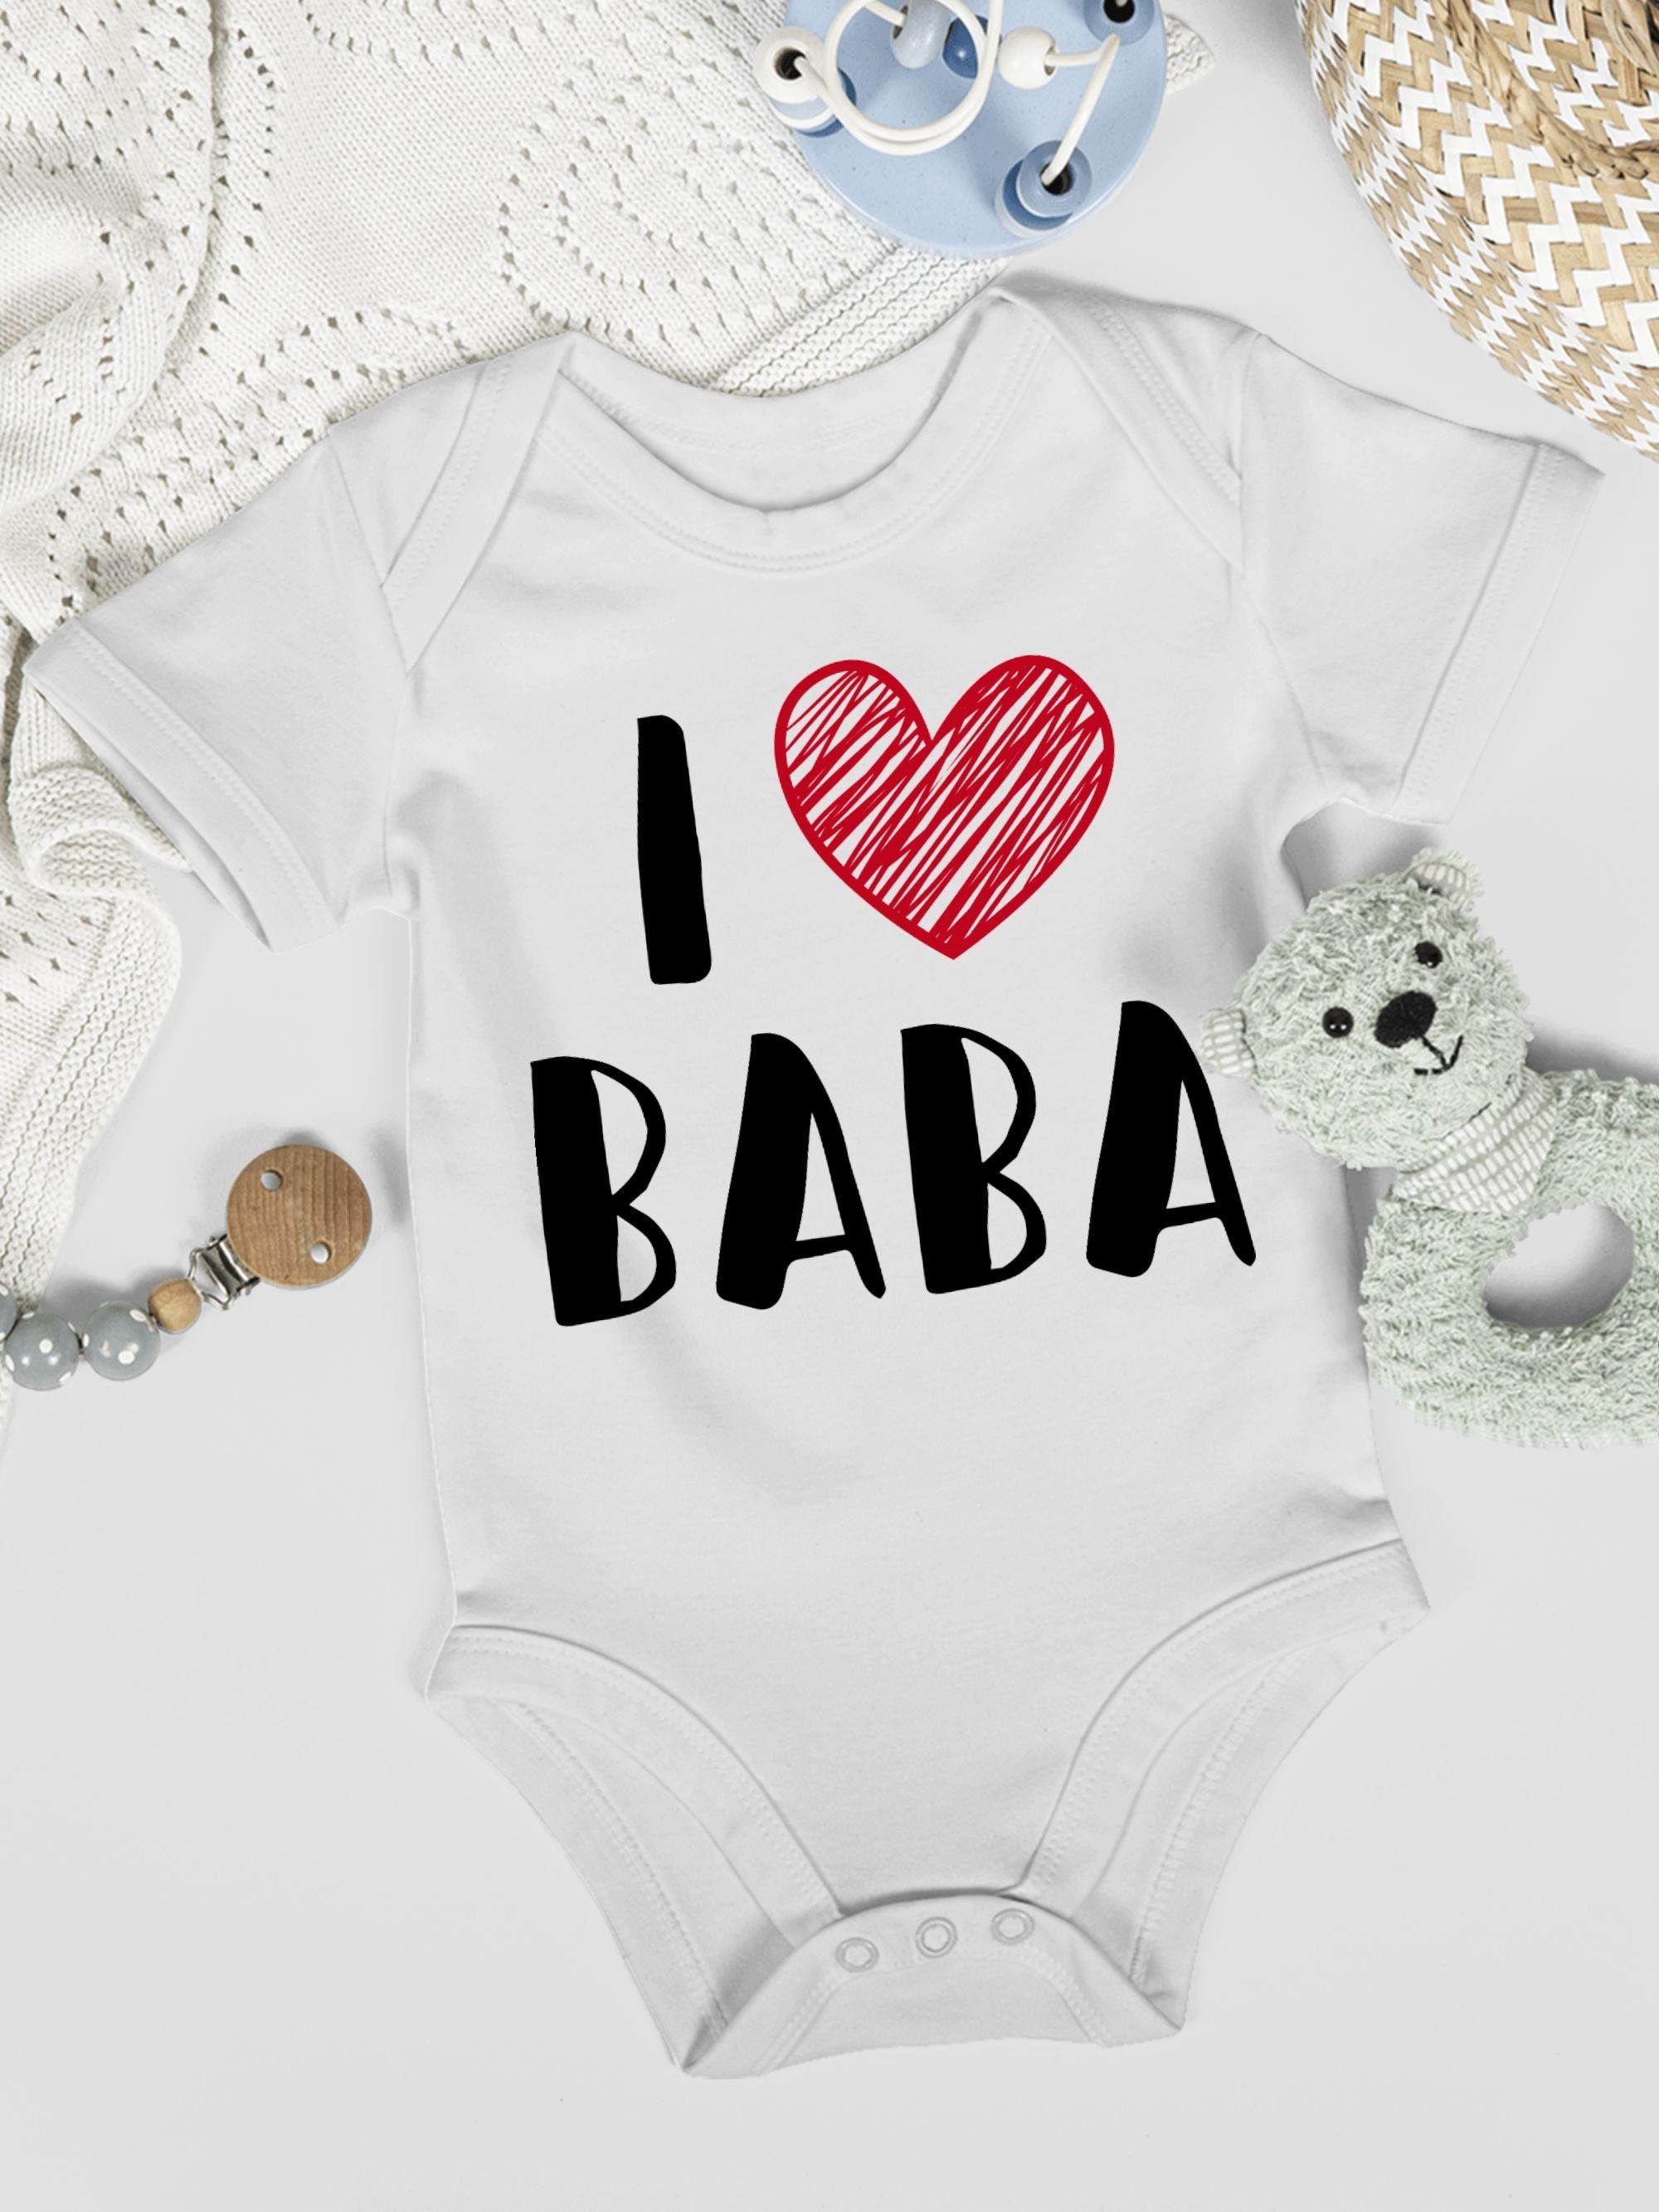 Vatertag I Love Geschenk Shirtracer Shirtbody Baba 1 Weiß Baby